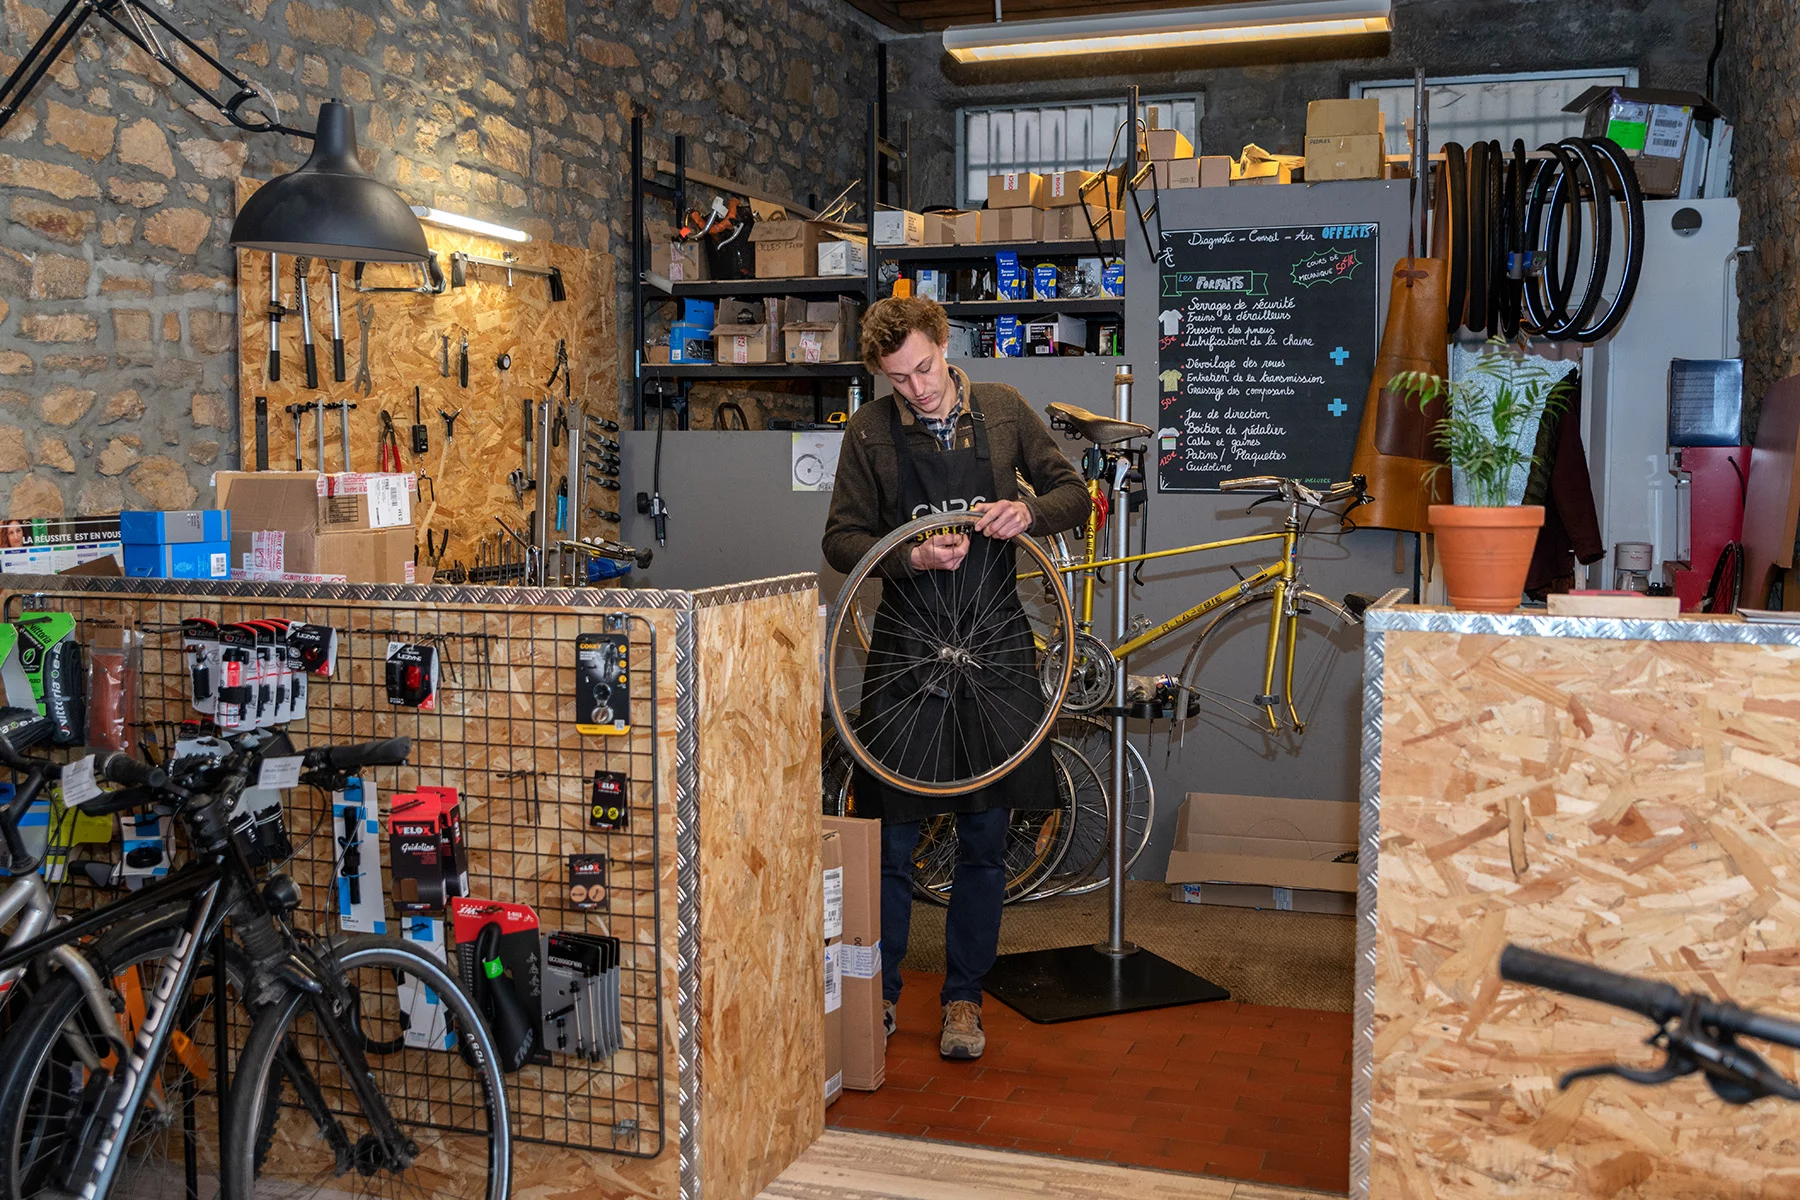 A bike shop owner in Lyon, France